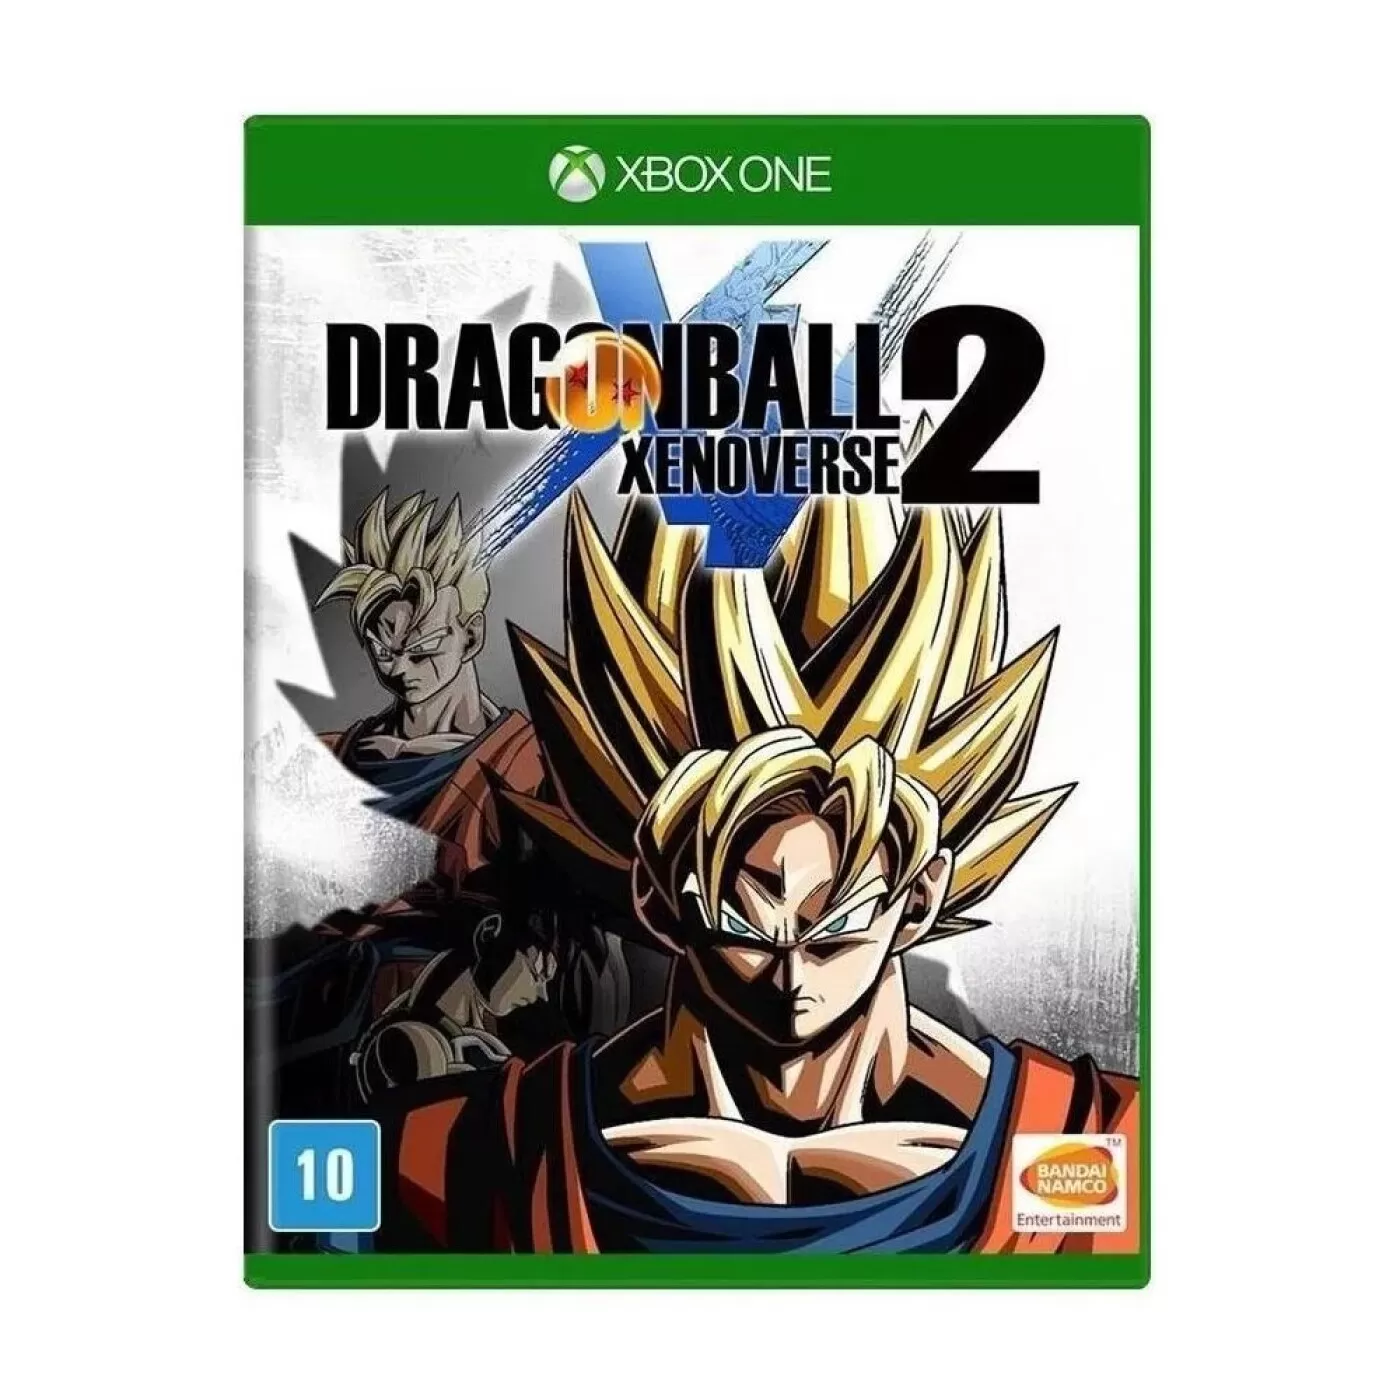 Dragon Ball Xenoverse - Xbox 360 - Game Games - Loja de Games Online